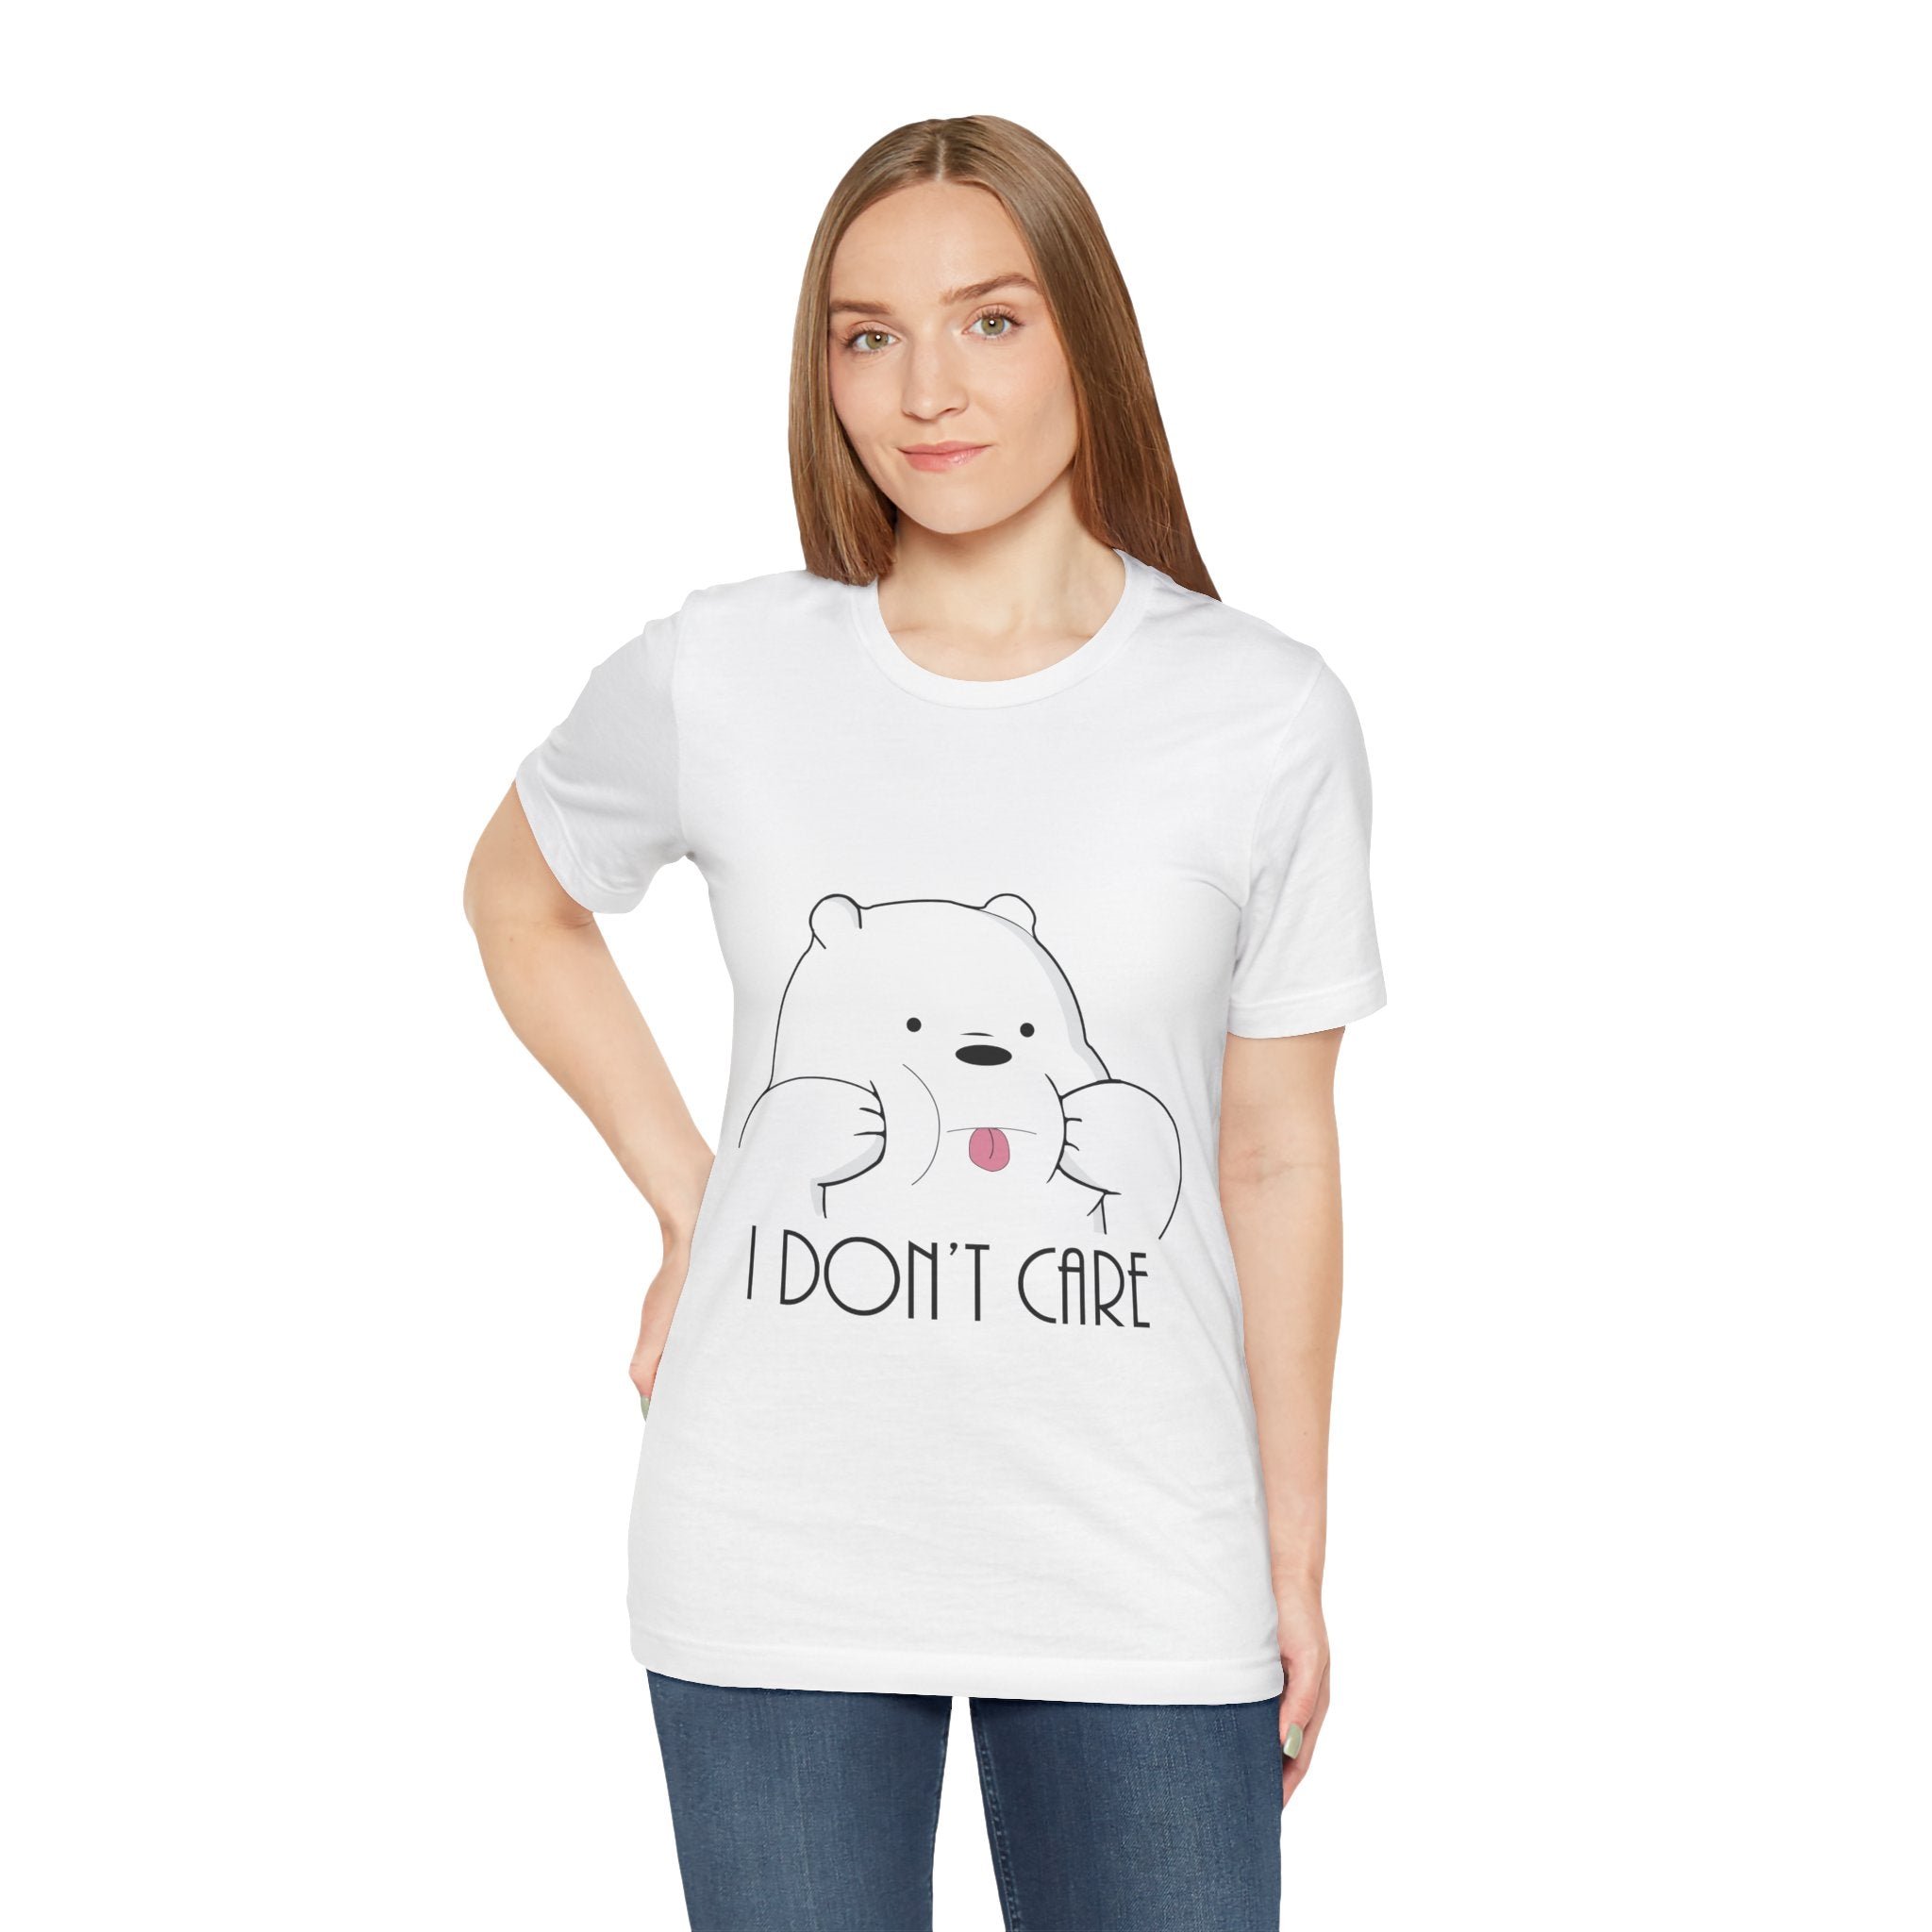 Woman in an I Don't Care Panda T-Shirt.